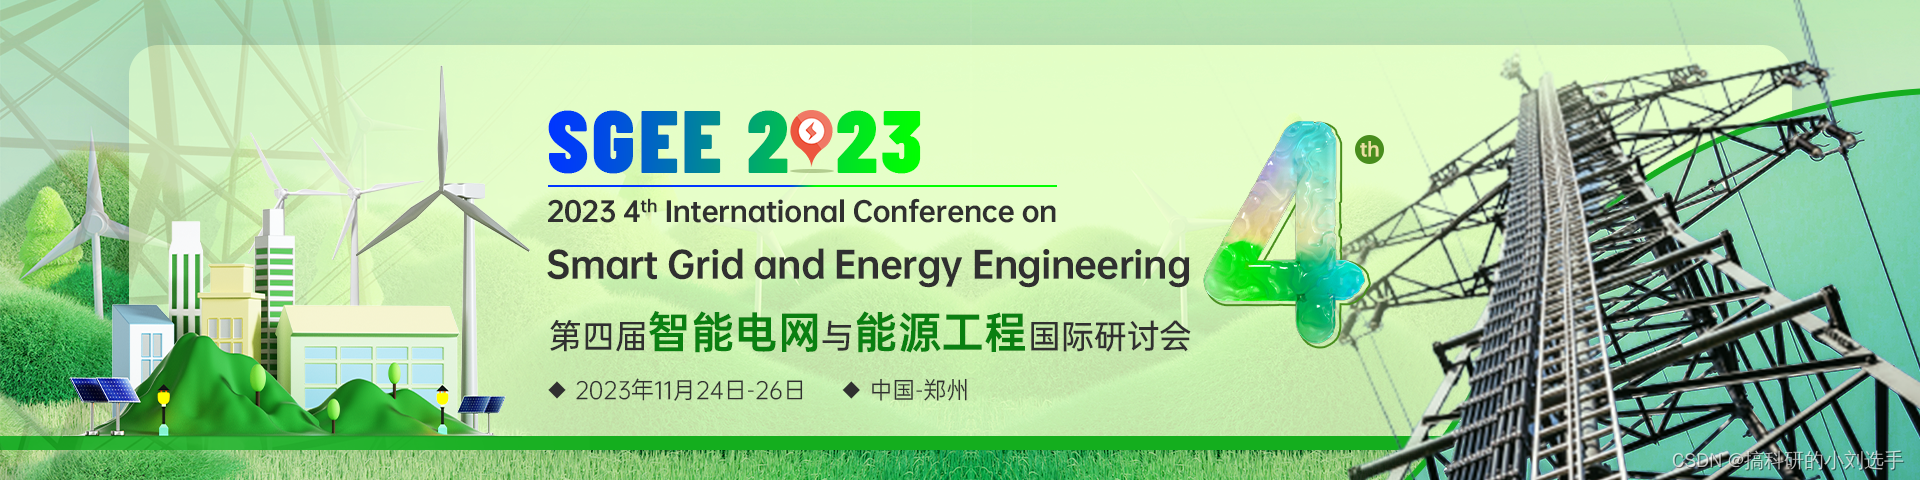 【EI检索会议】第四届智能电网与能源工程国际研讨会（SGEE 2023）